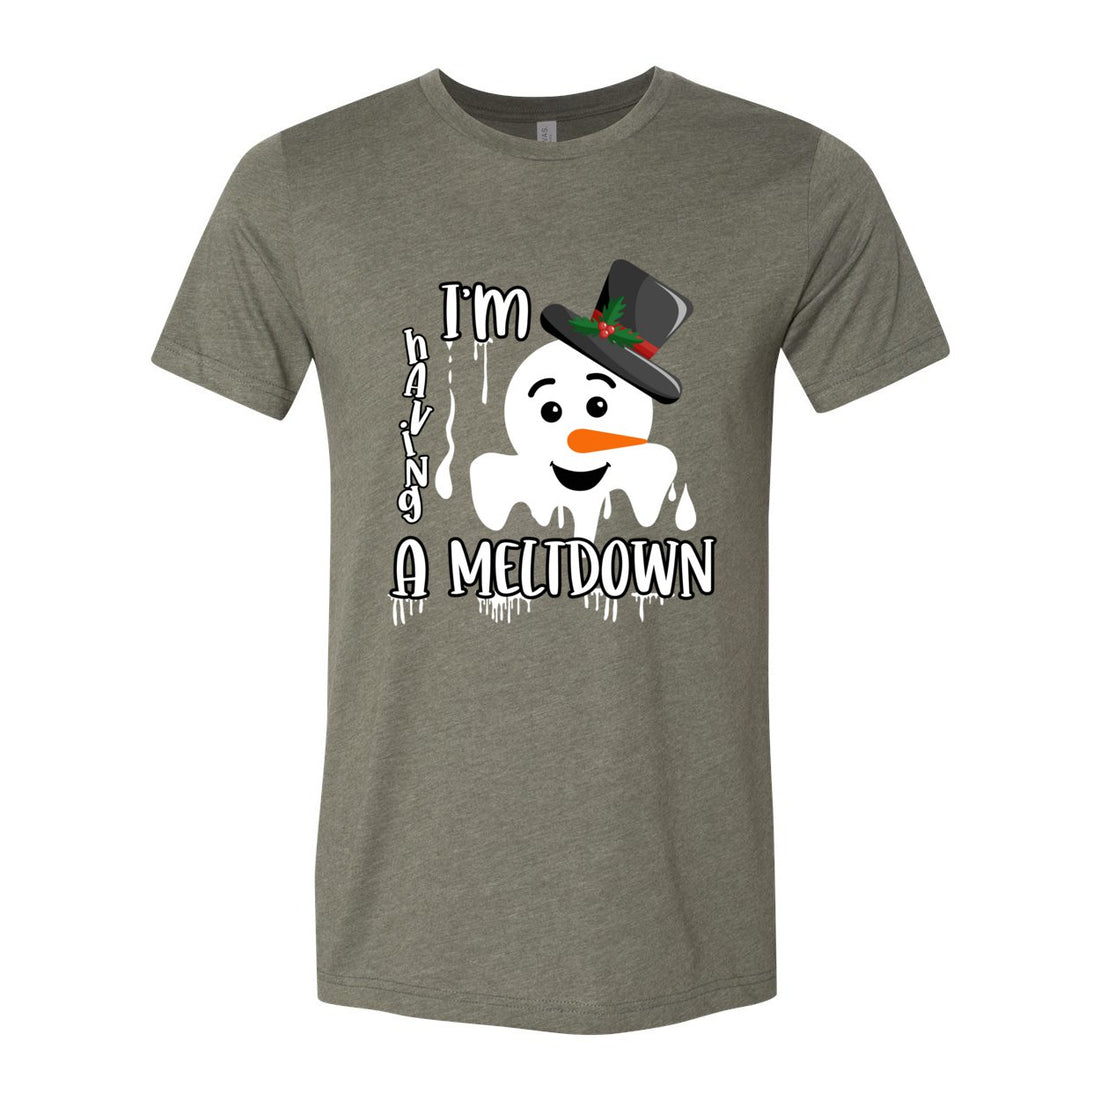 Meltdown - T-Shirts - Positively Sassy - Meltdown